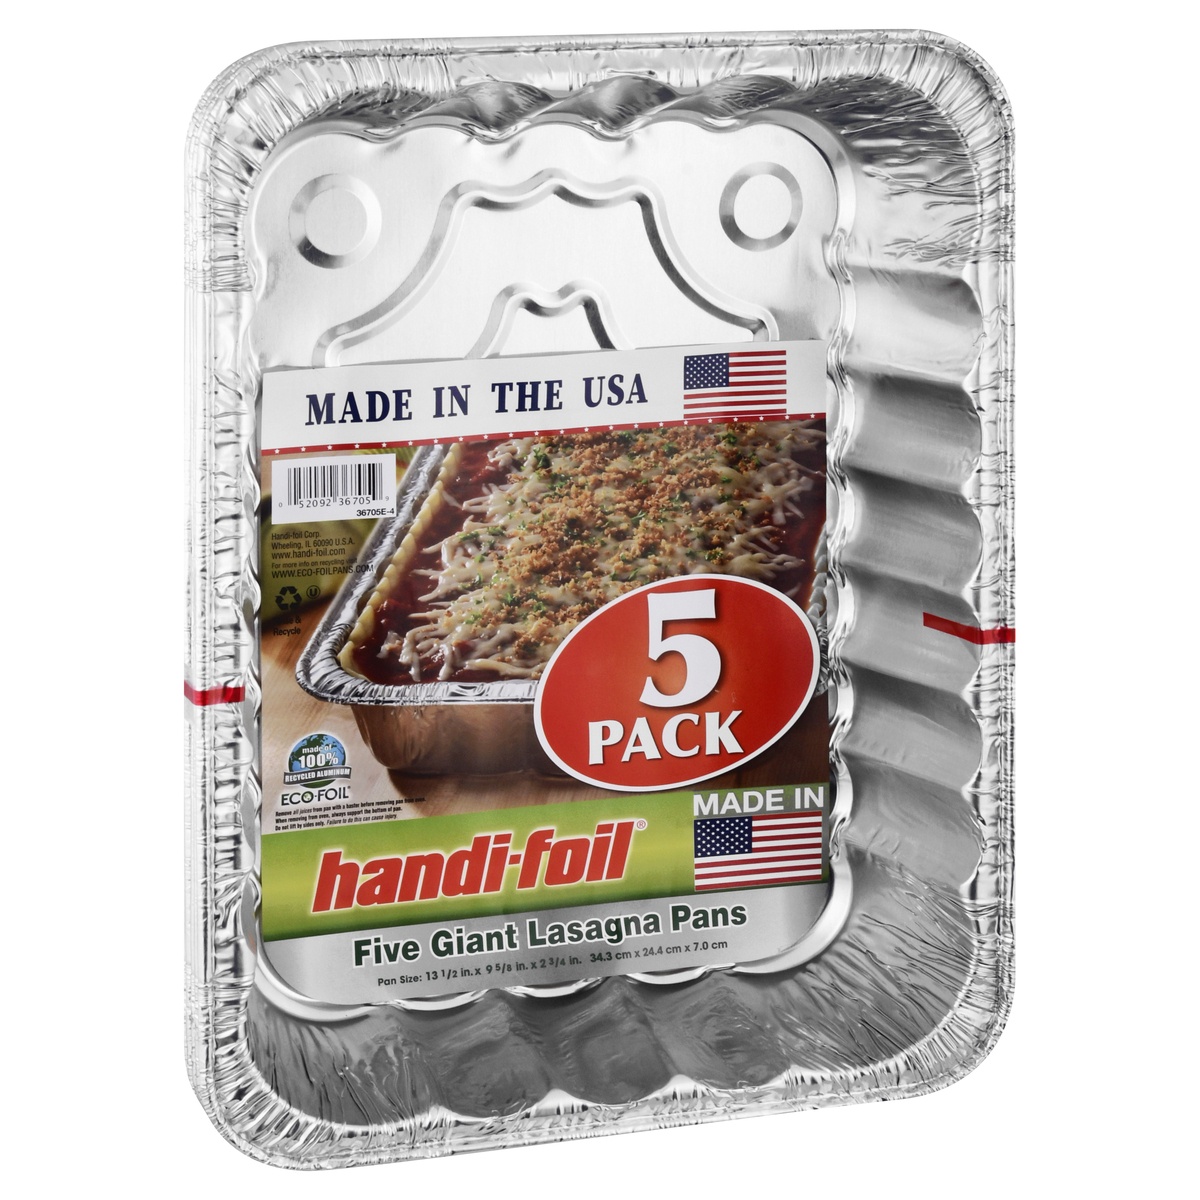 slide 2 of 8, Handi-foil Eco-Foil Lasagna Pan 5 Pack 135 X 9625 X 275 Inch, 5 ct